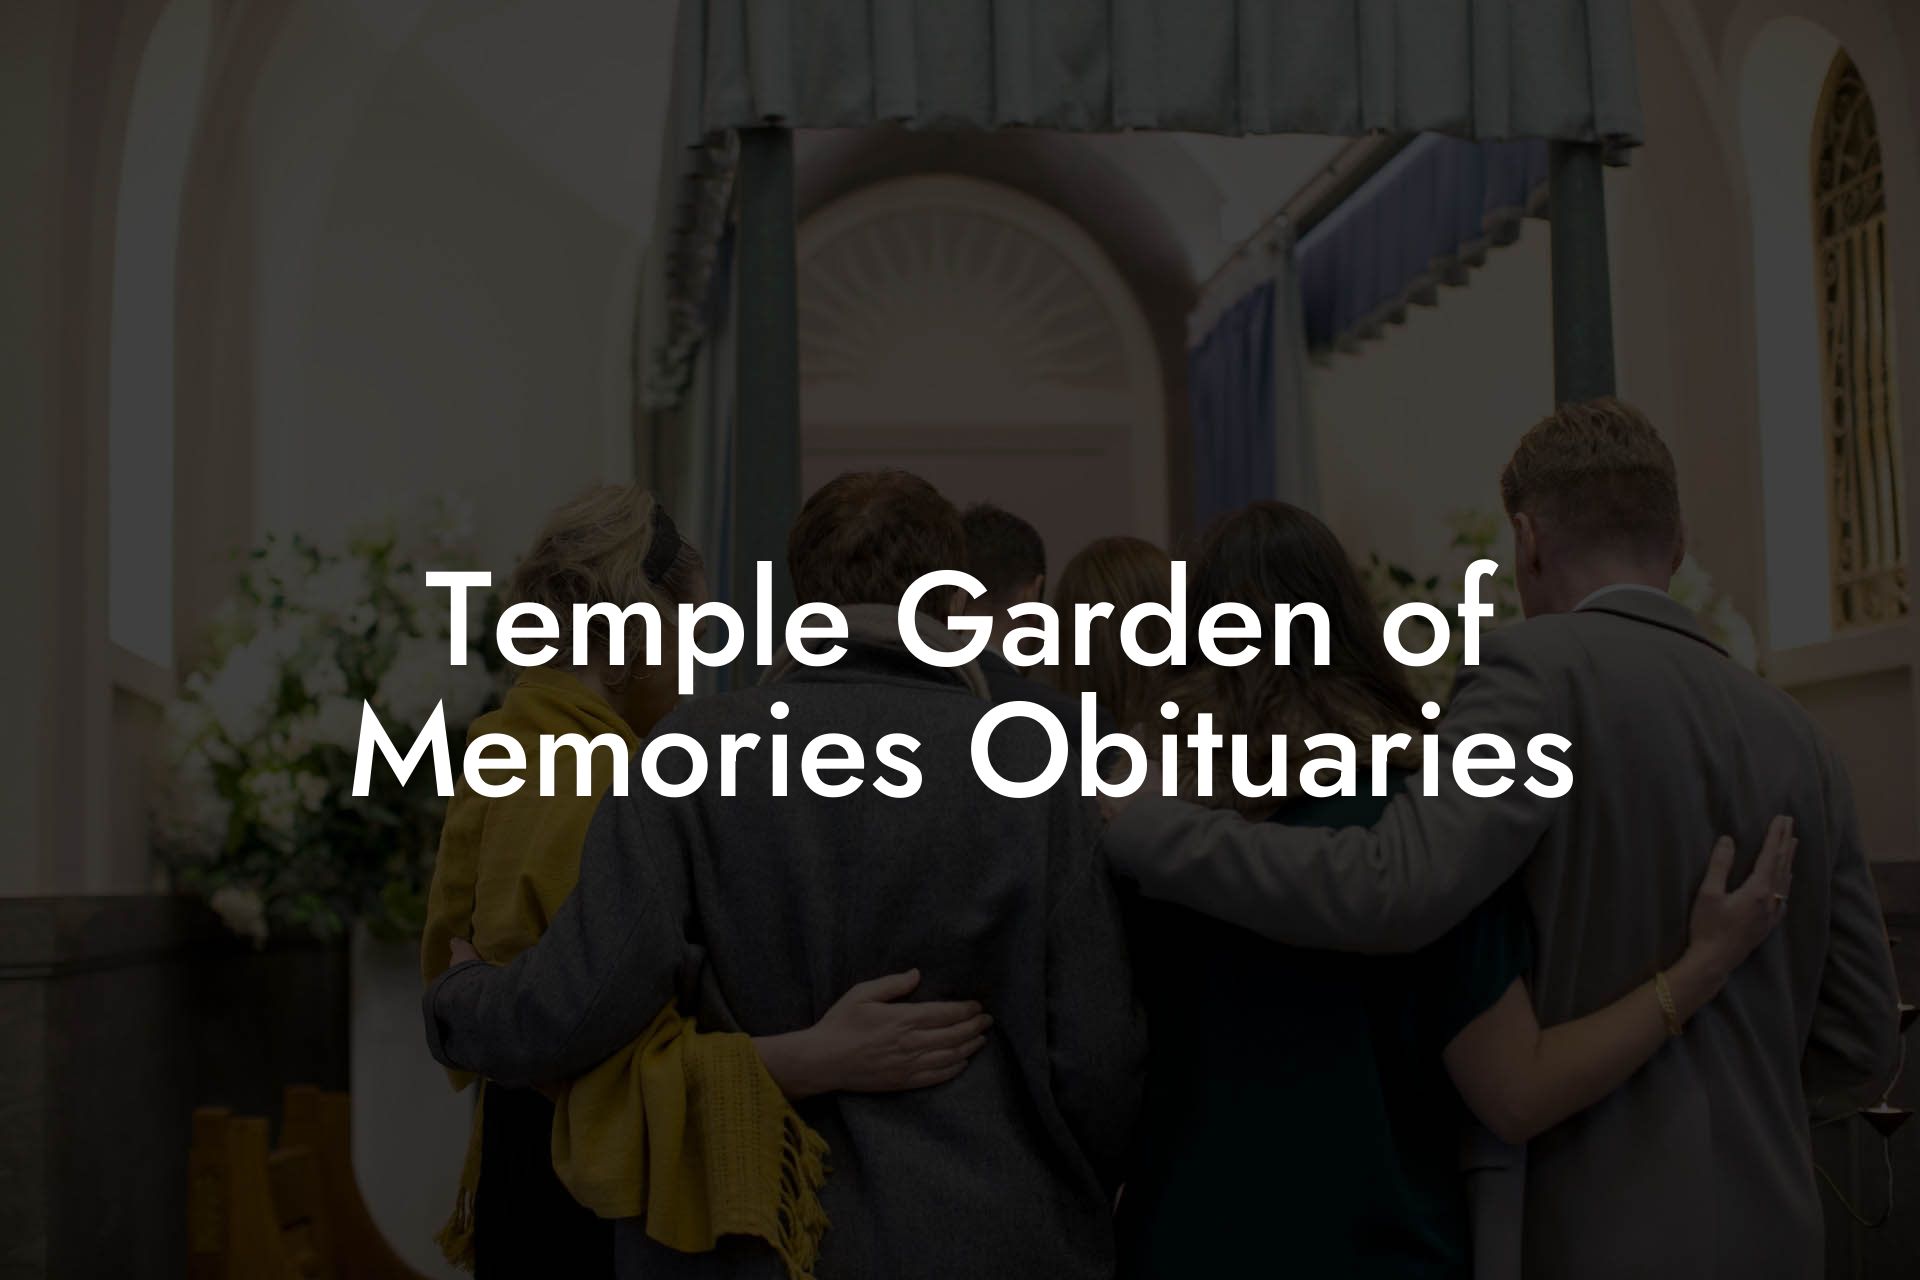 Temple Garden of Memories Obituaries